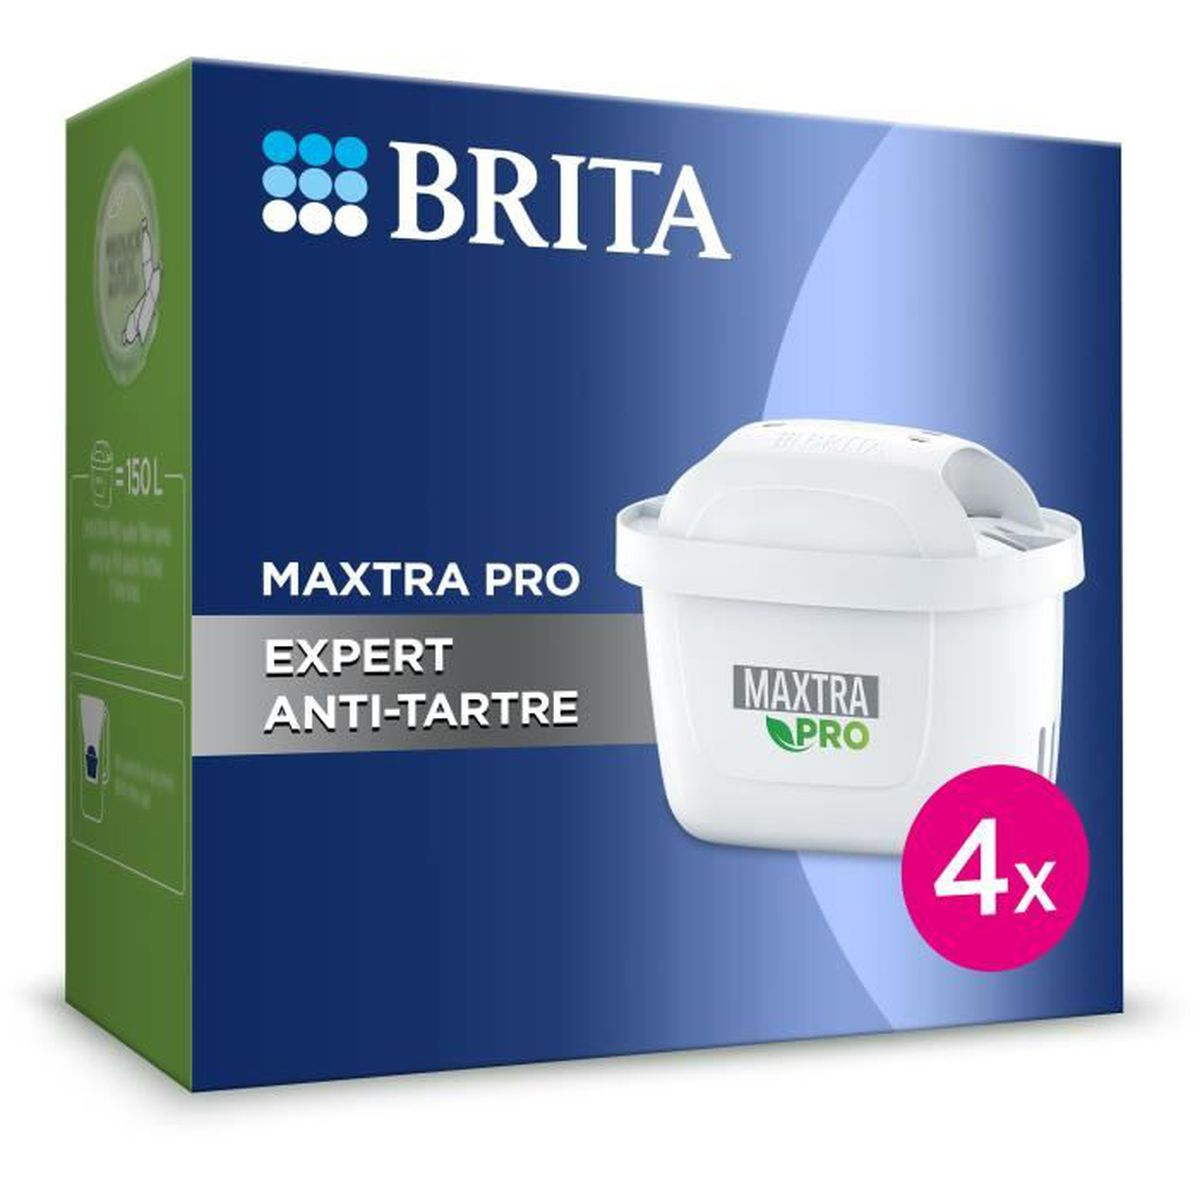 Maxtra Pro Kartusche 4 BRITA